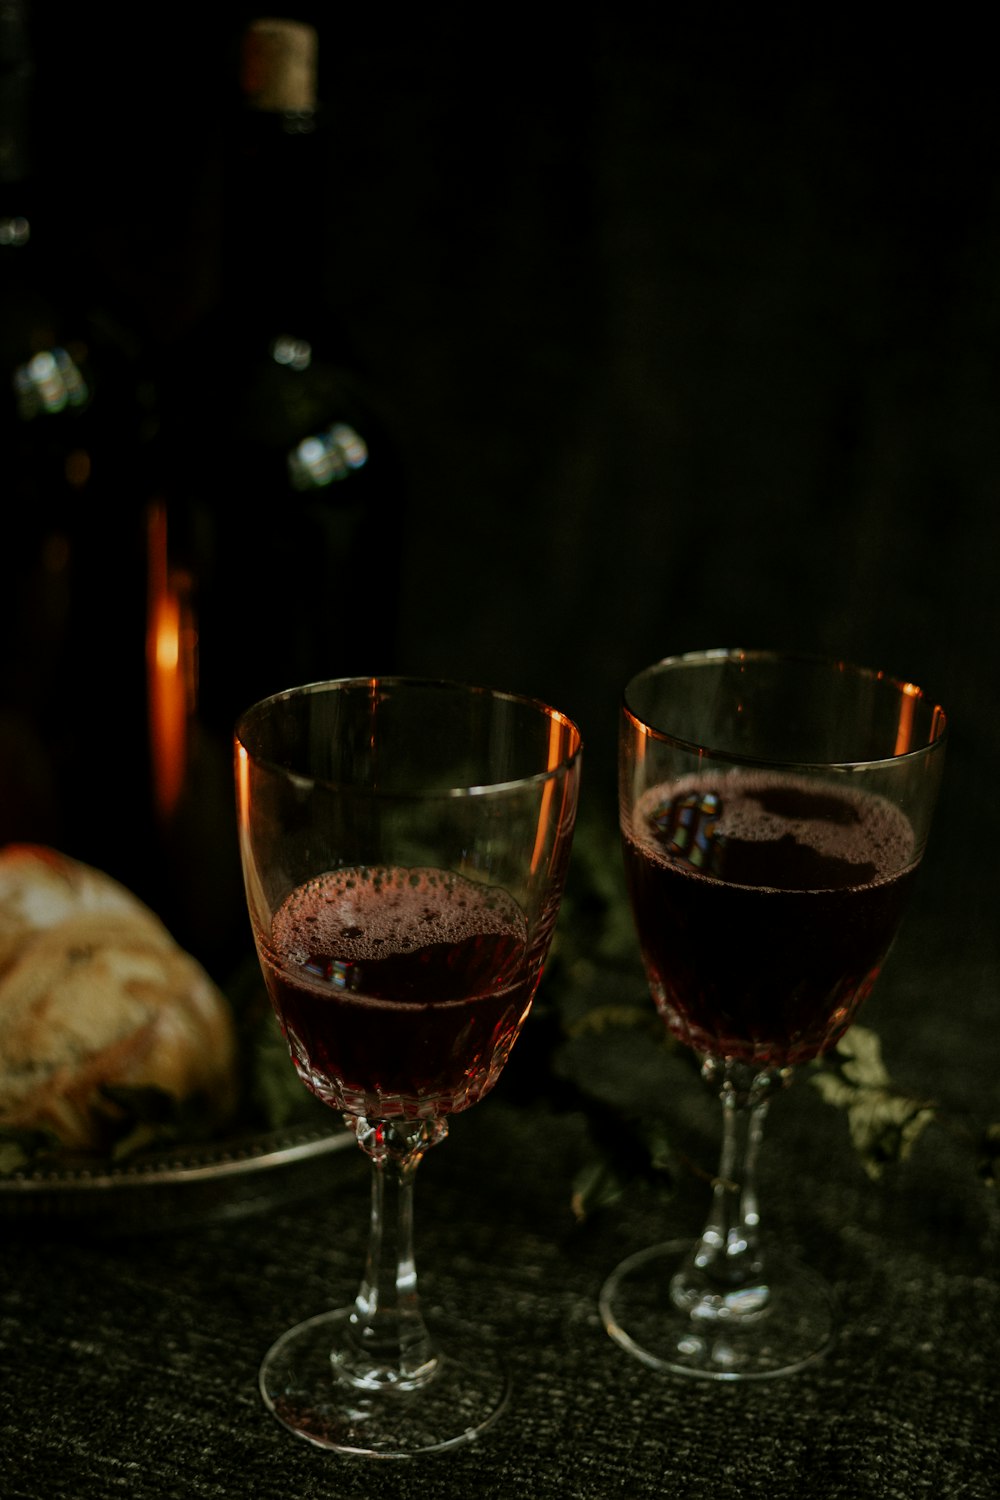 Foto de dos copas de vino claras – Imagen gratuita Vidrio en Unsplash